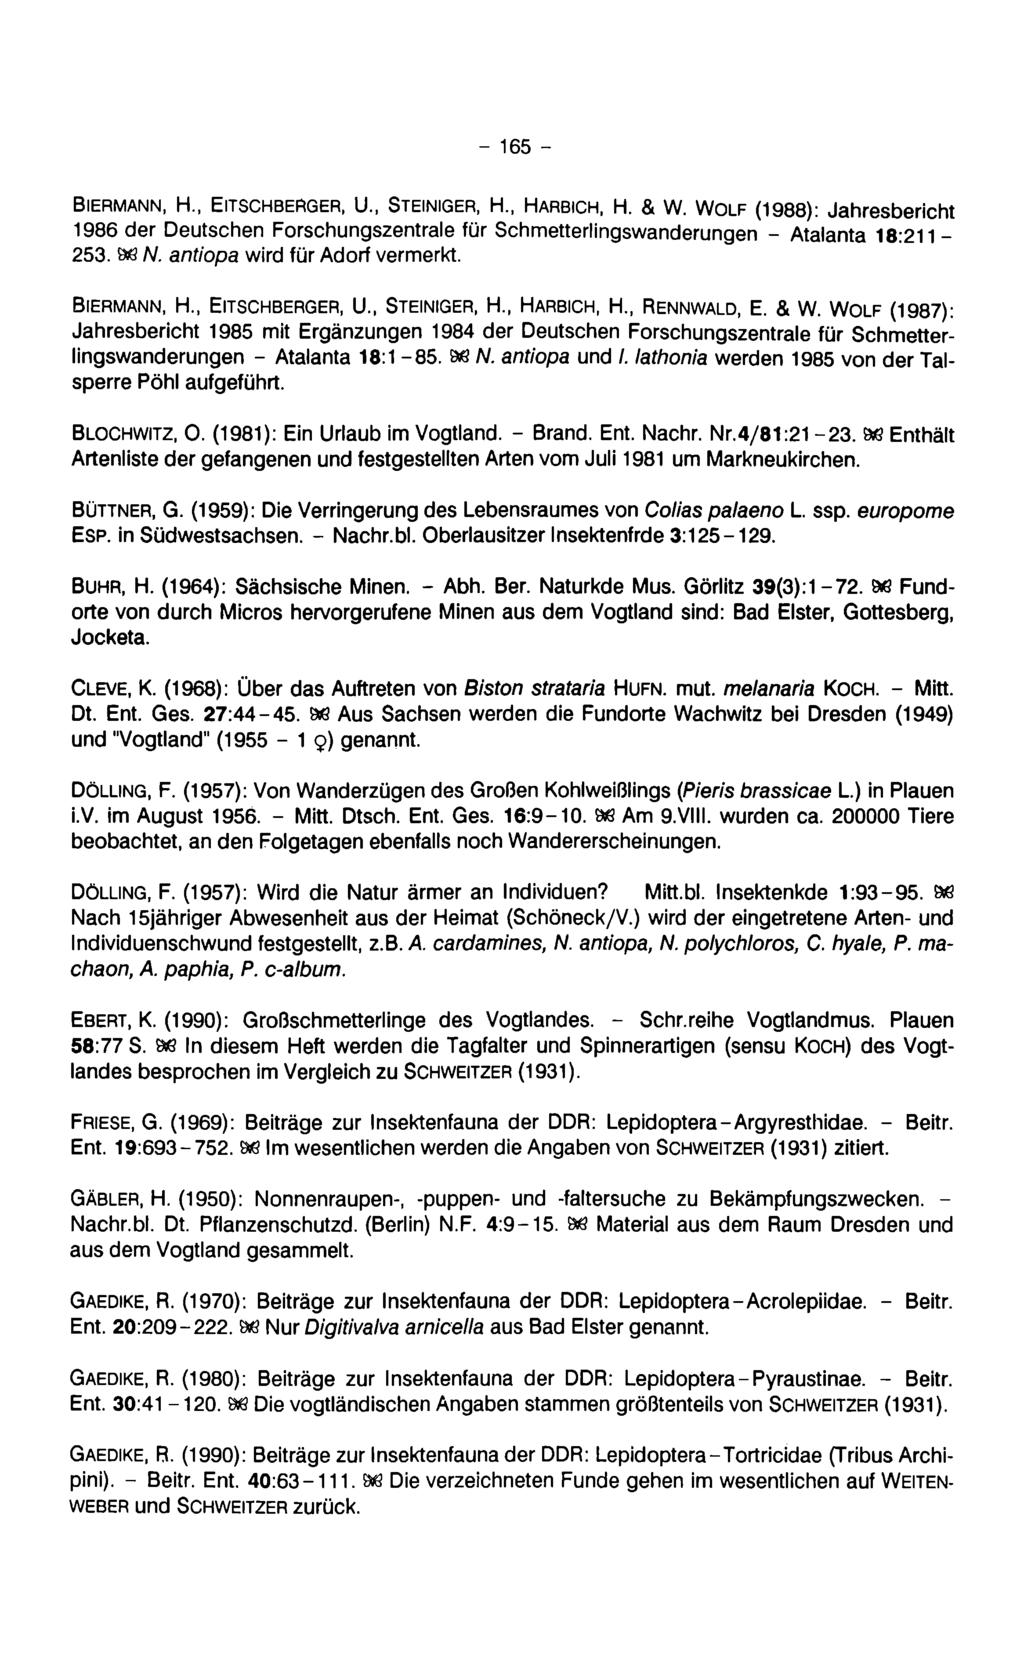 - 165 - Biermann, H., Eitschberger, U., Steiniger, H Harbich, H. & W. Wolf (1988): Jahresbericht 1986 der Deutschen Forschungszentrale für Schmetterlingswanderungen - Atalanta 18:211-253. 88 N.